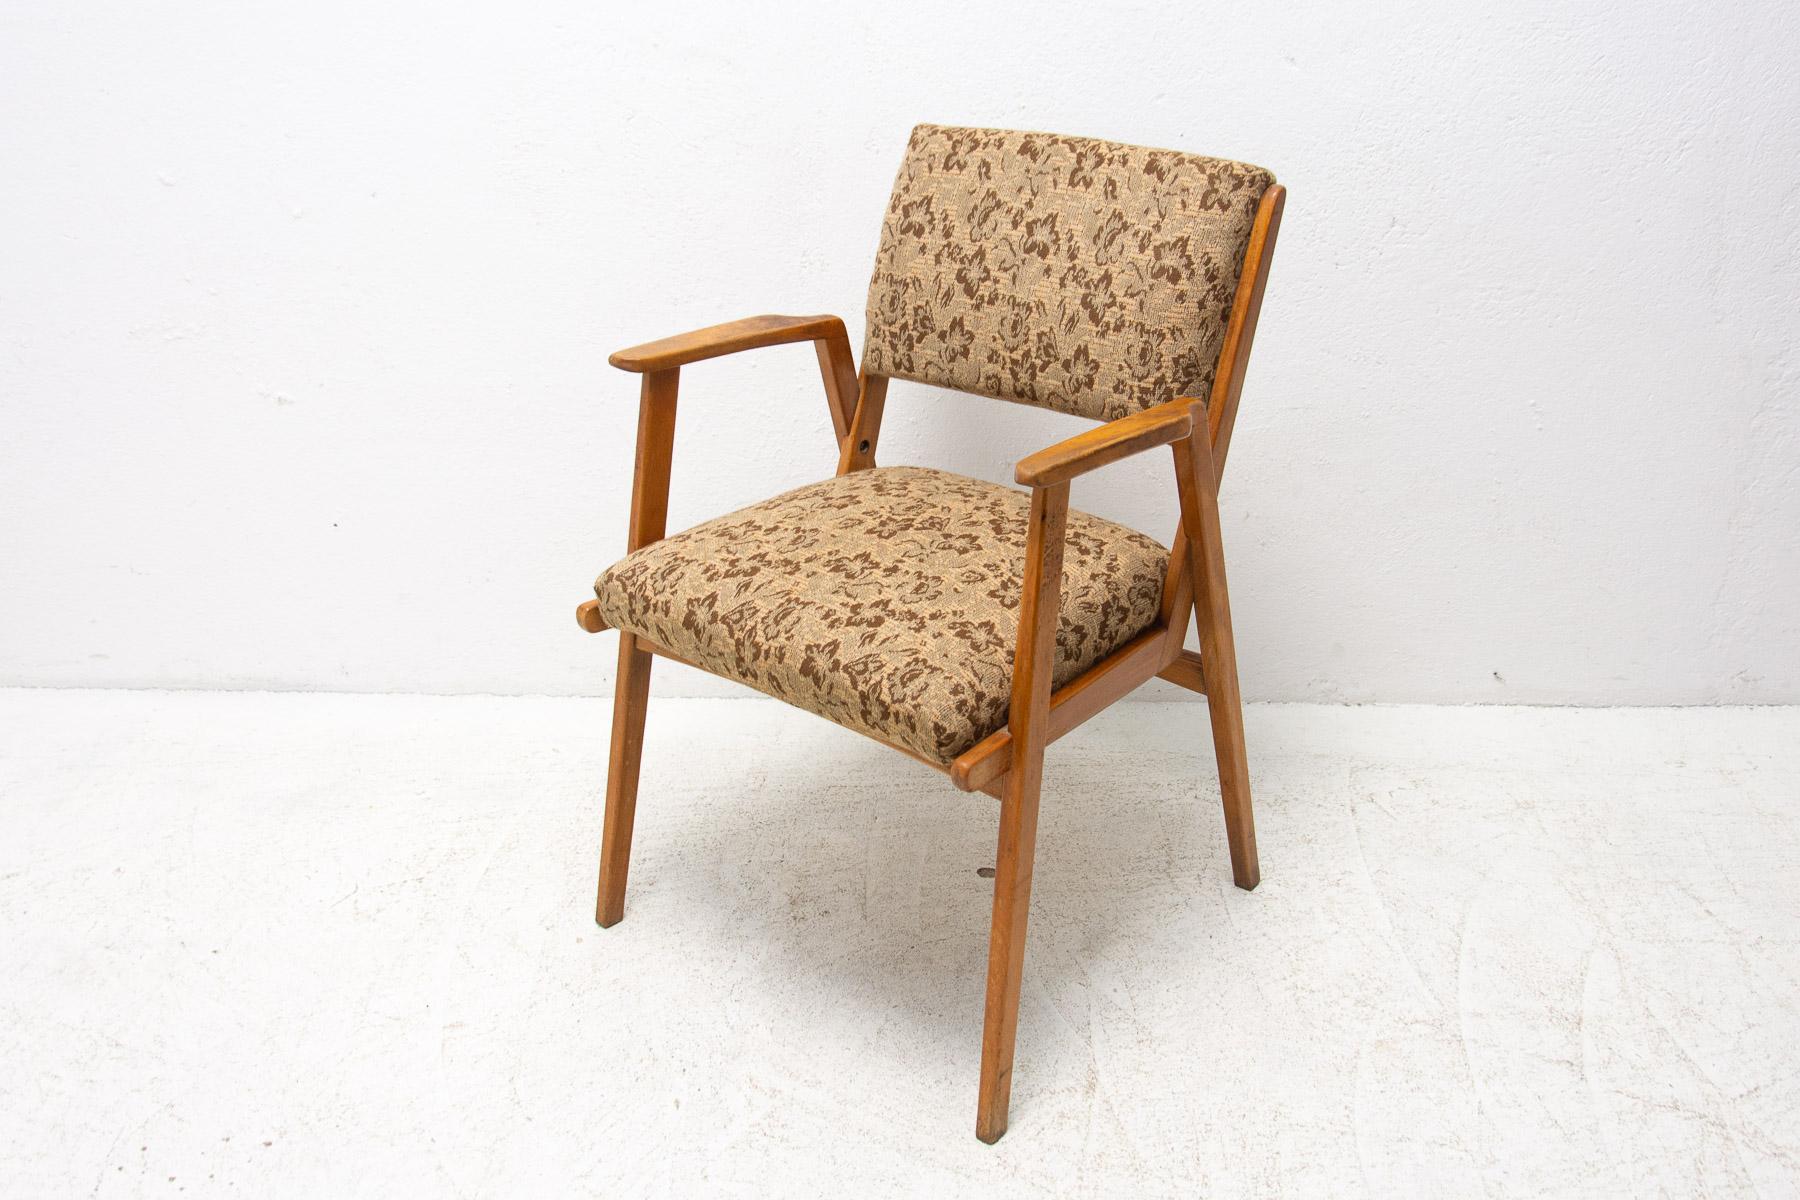 Ce fauteuil a été fabriqué dans les années 1960. Elle peut être utilisée comme chaise de bureau ou chaise de salon. Typique du design tchécoslovaque après l'énorme succès du pavillon tchécoslovaque à l'exposition EXPO 58 à Bruxelles. Fabriqué en